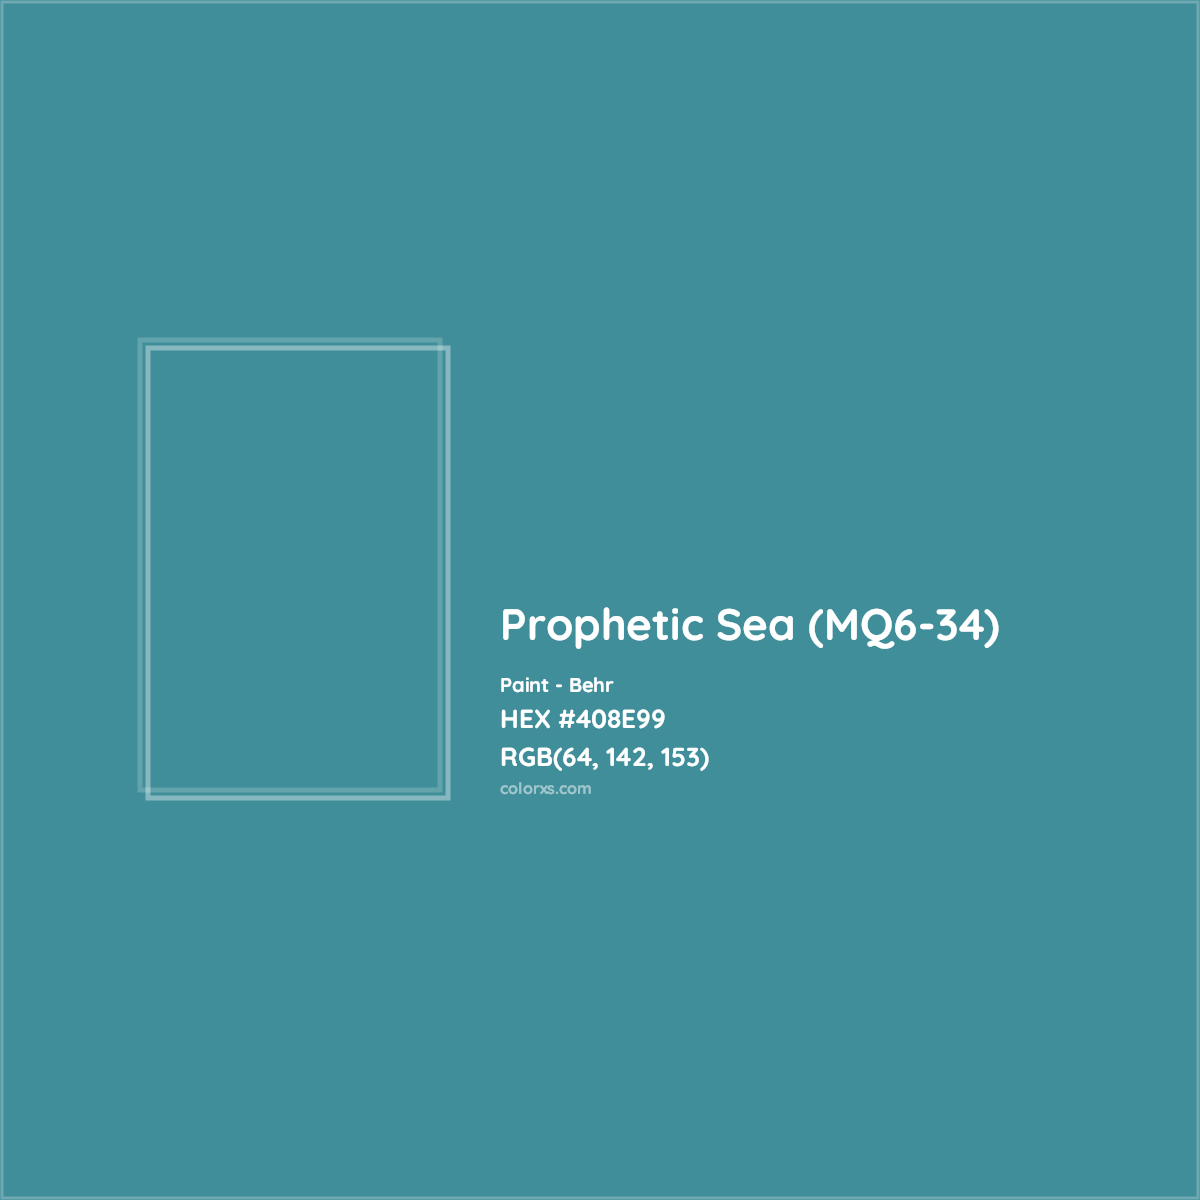 HEX #408E99 Prophetic Sea (MQ6-34) Paint Behr - Color Code